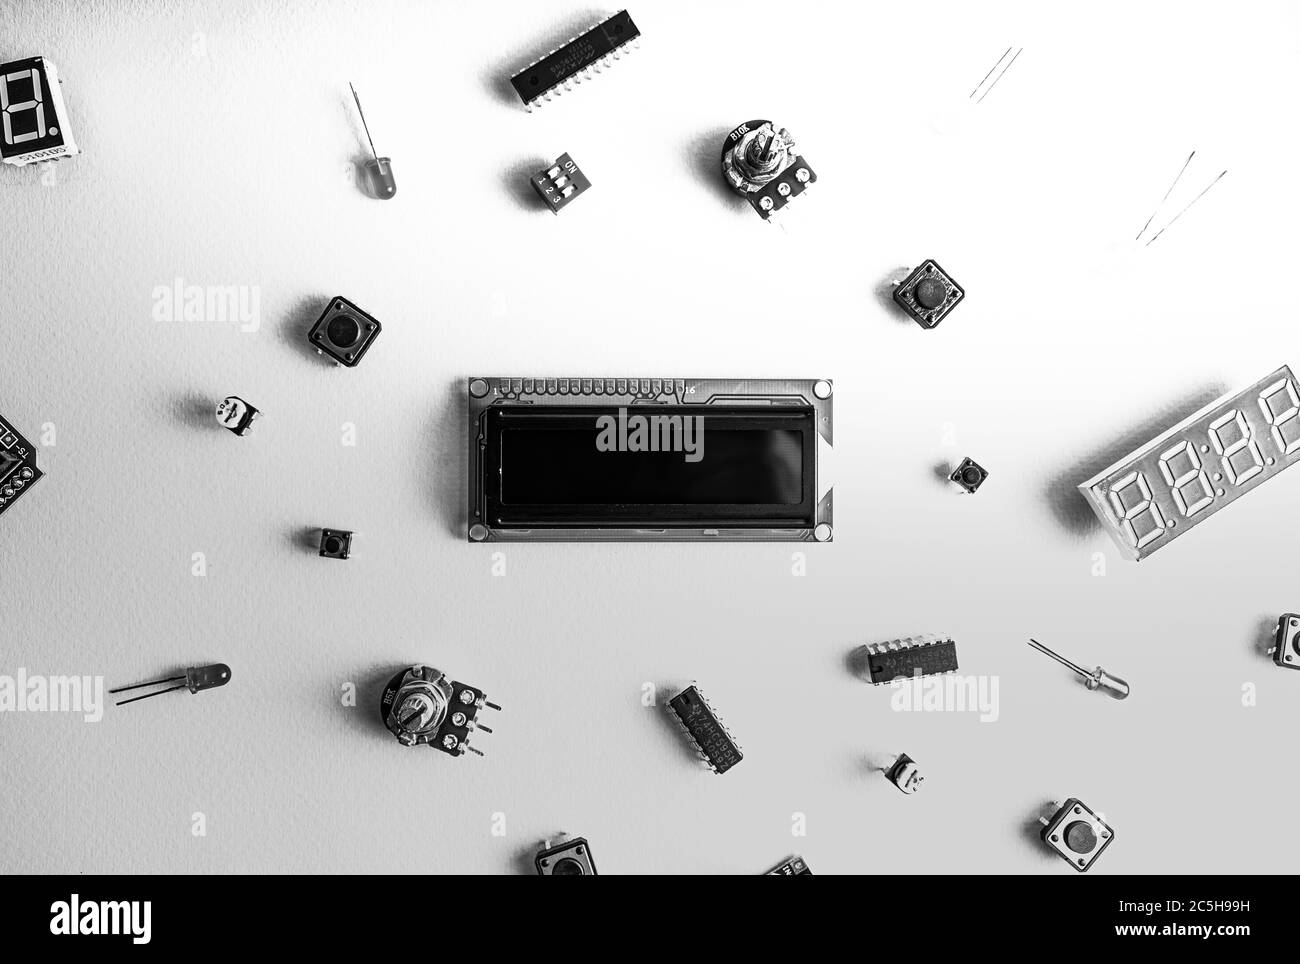 Mikroelektronik arduino DIY-Komponenten auf einem hellen Hintergrund, Draufsicht, Kopierraum. Mikrocontroller, Platinen, Sensoren, leds, Controller, schwarz und Stockfoto